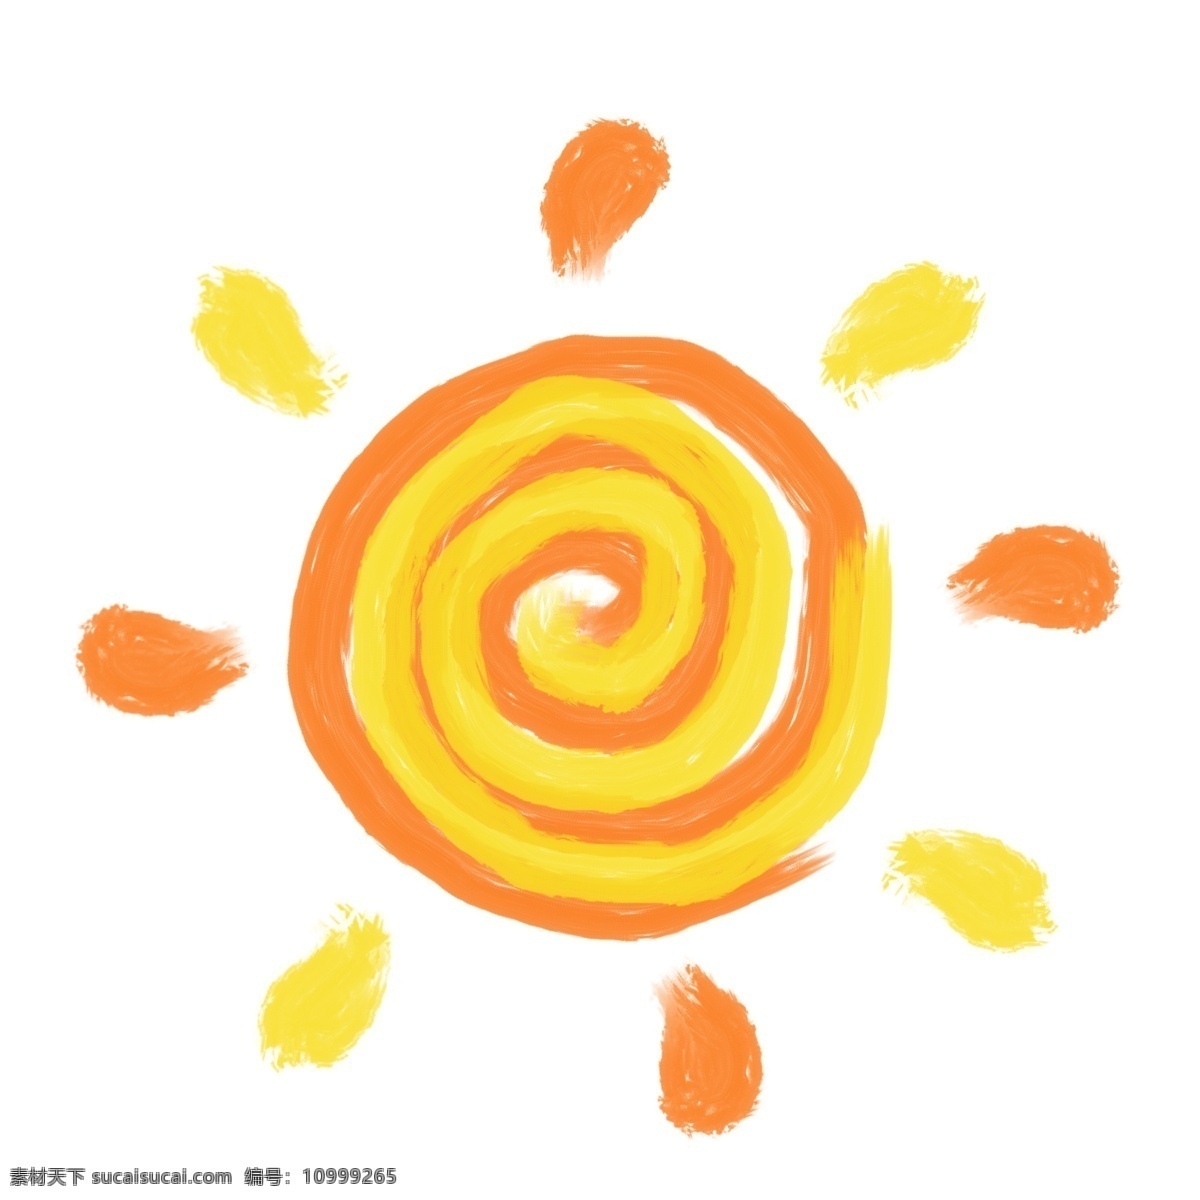 太阳元素图片 太阳 太阳元素 卡通太阳 阳光 才会太阳 06元素